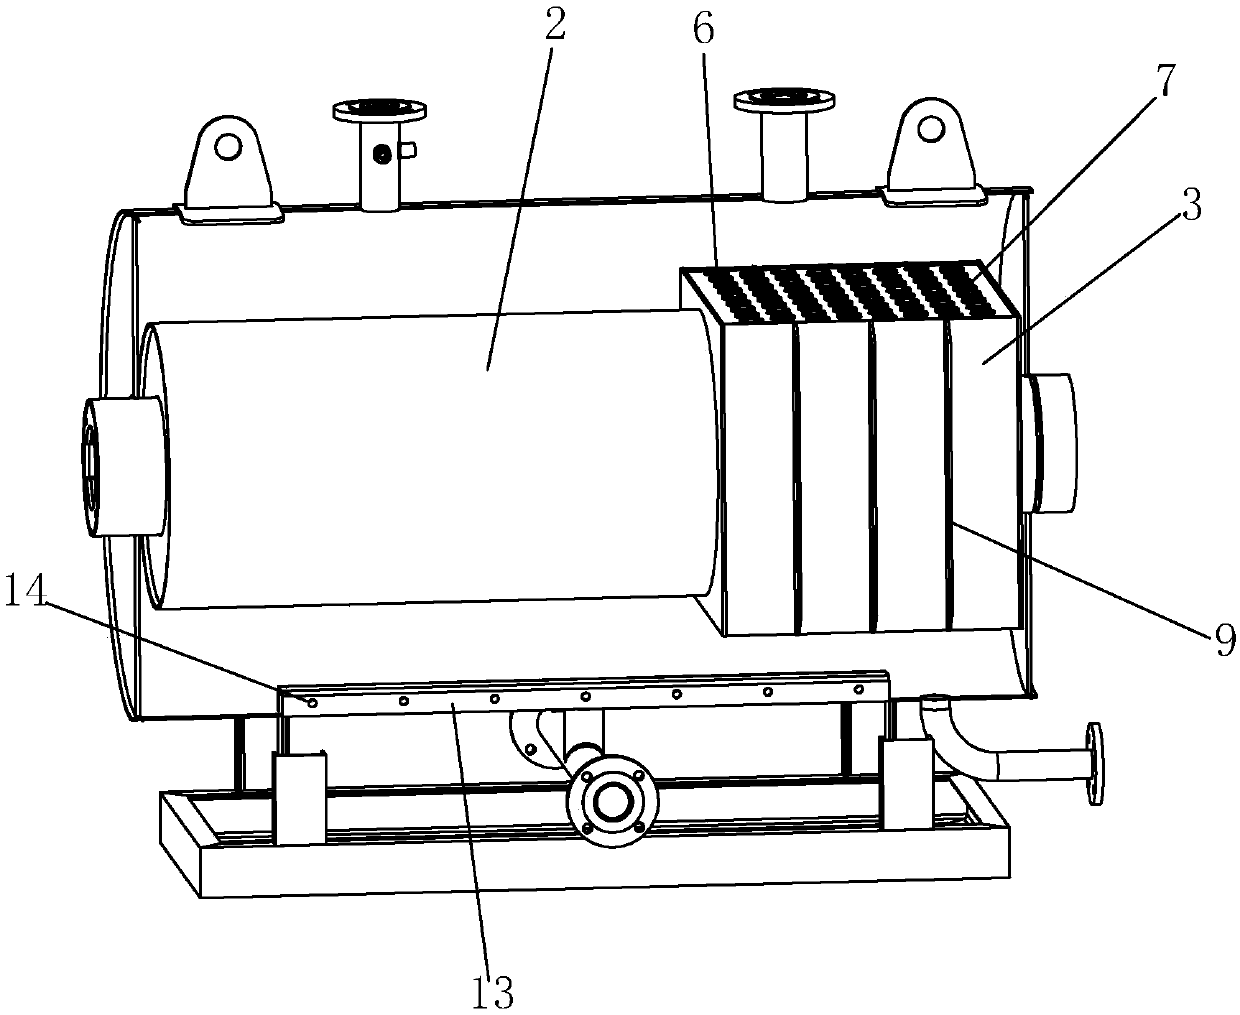 Horizontal type normal-pressure hot water boiler